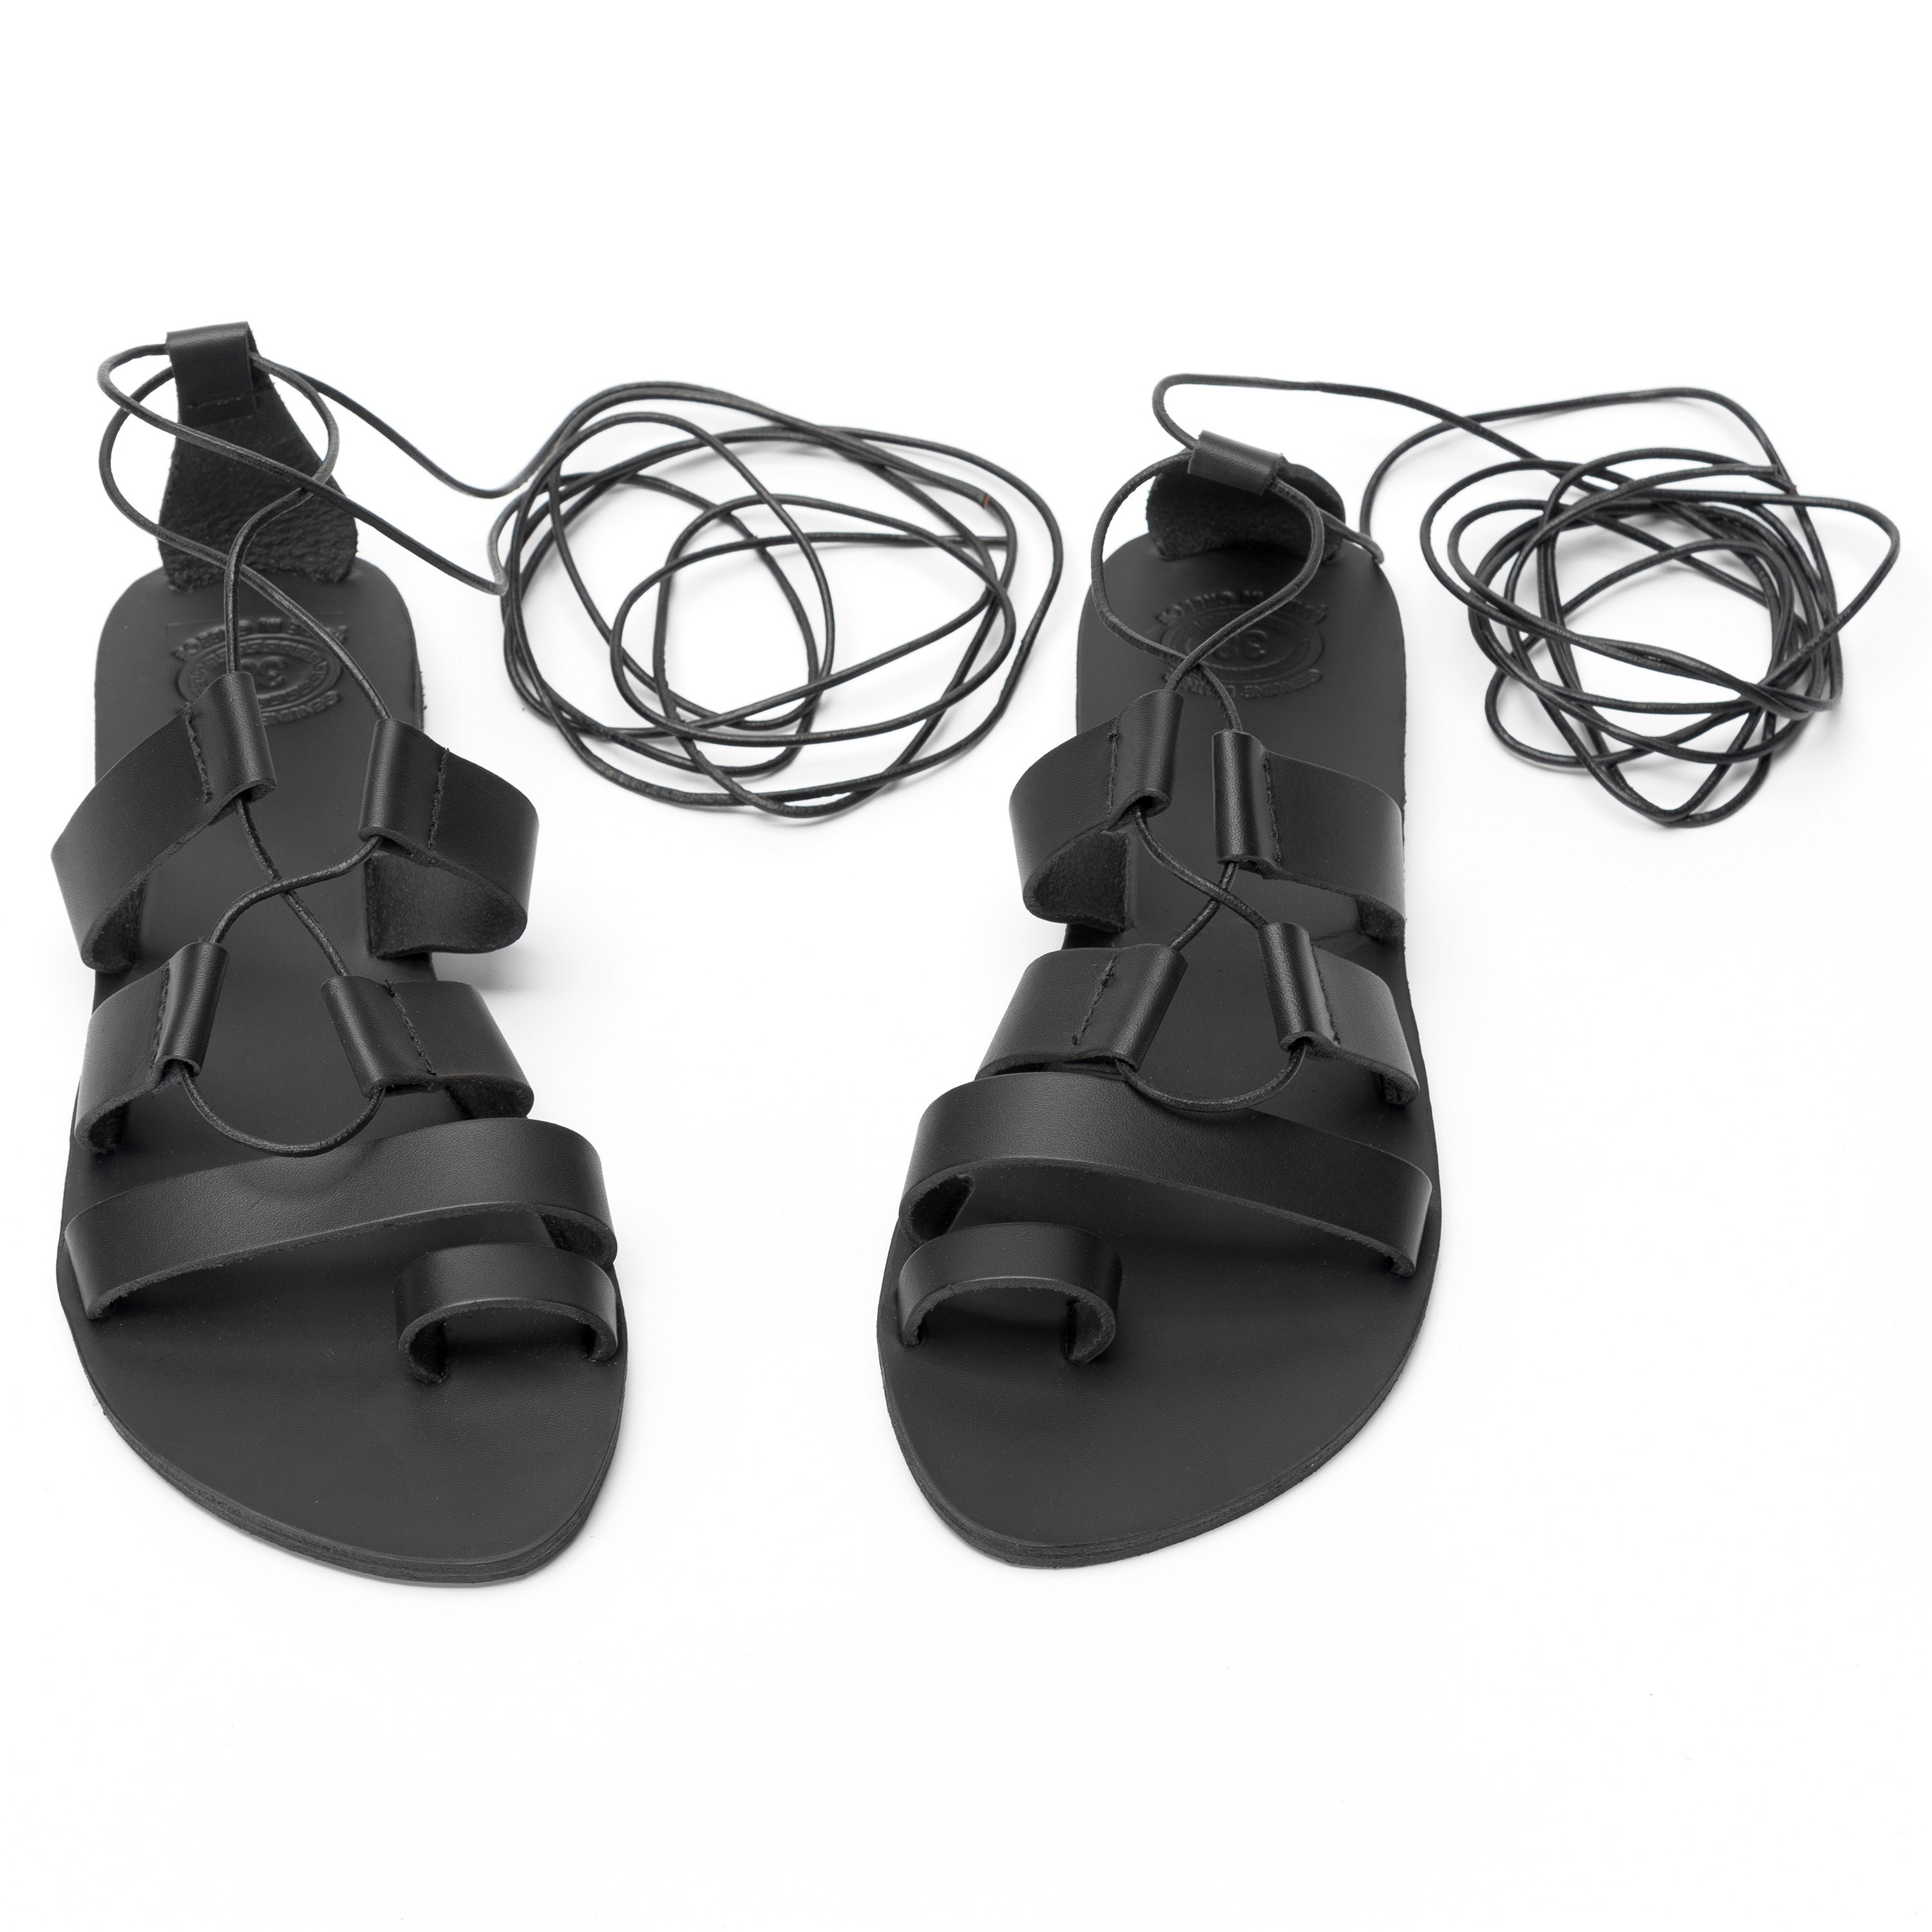 Gladiator Sandals Spartan Sandals Black Leather Sandals | Etsy